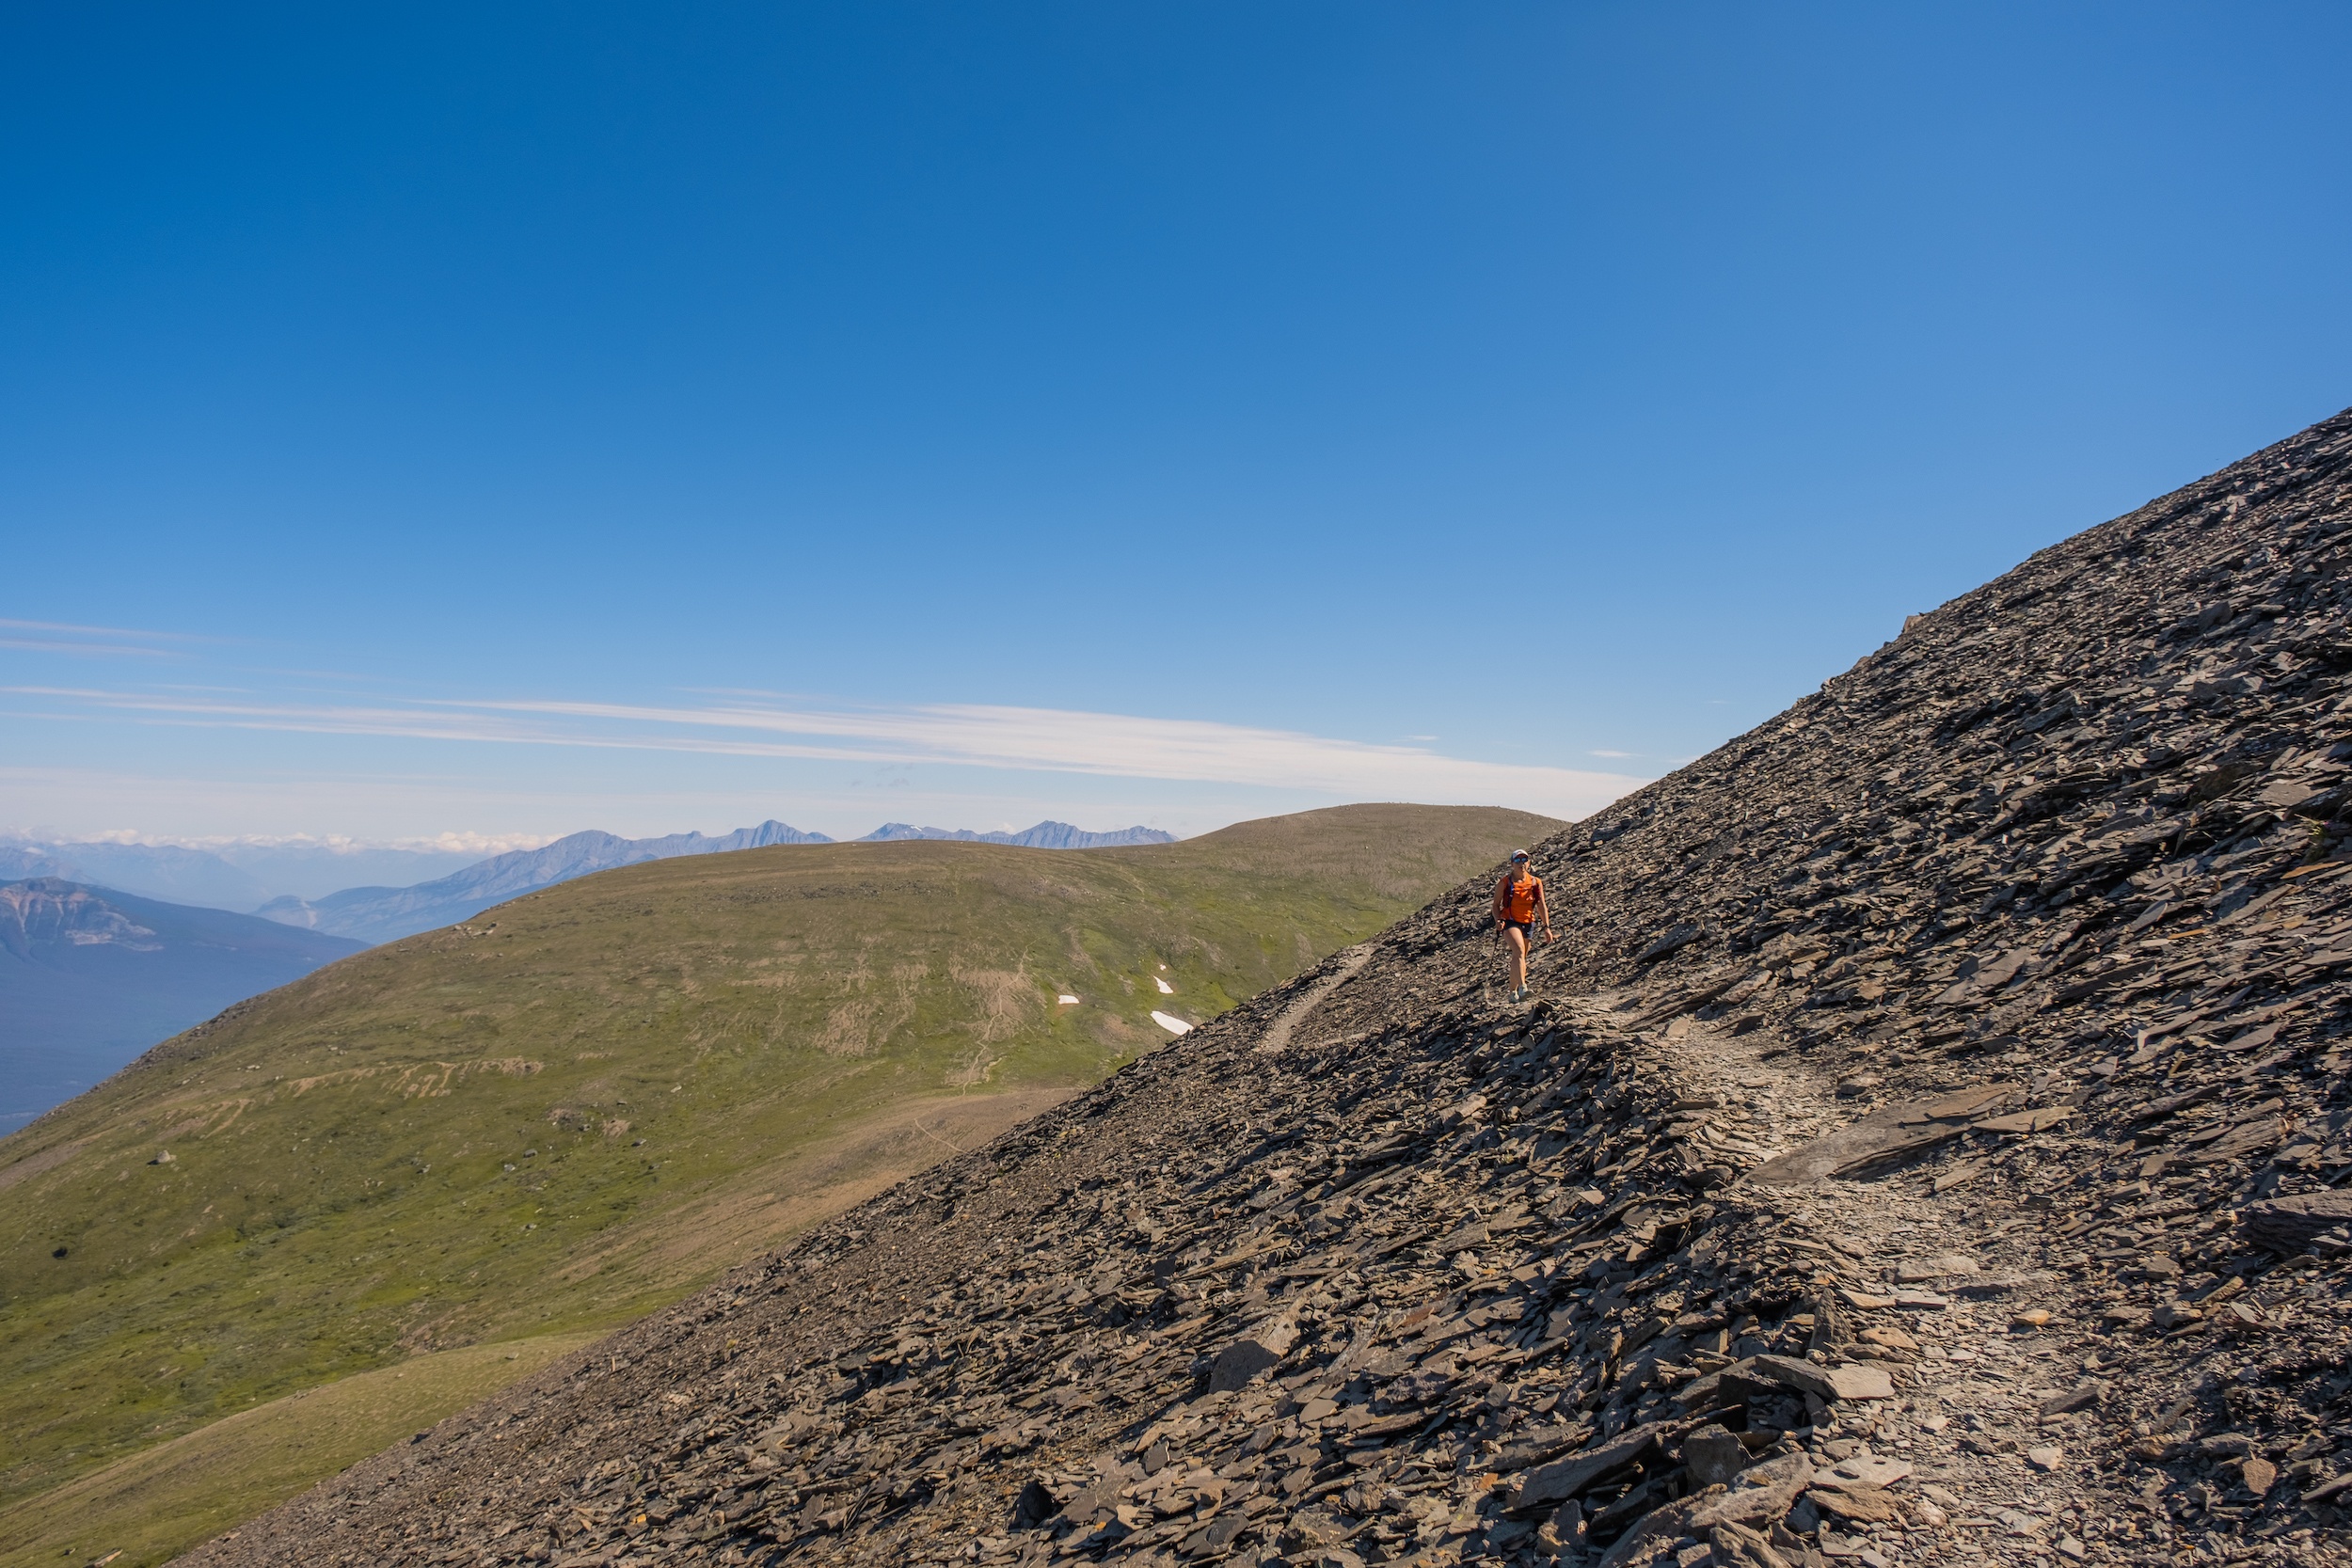 Indian Ridge Path Whsitler Peak Behind